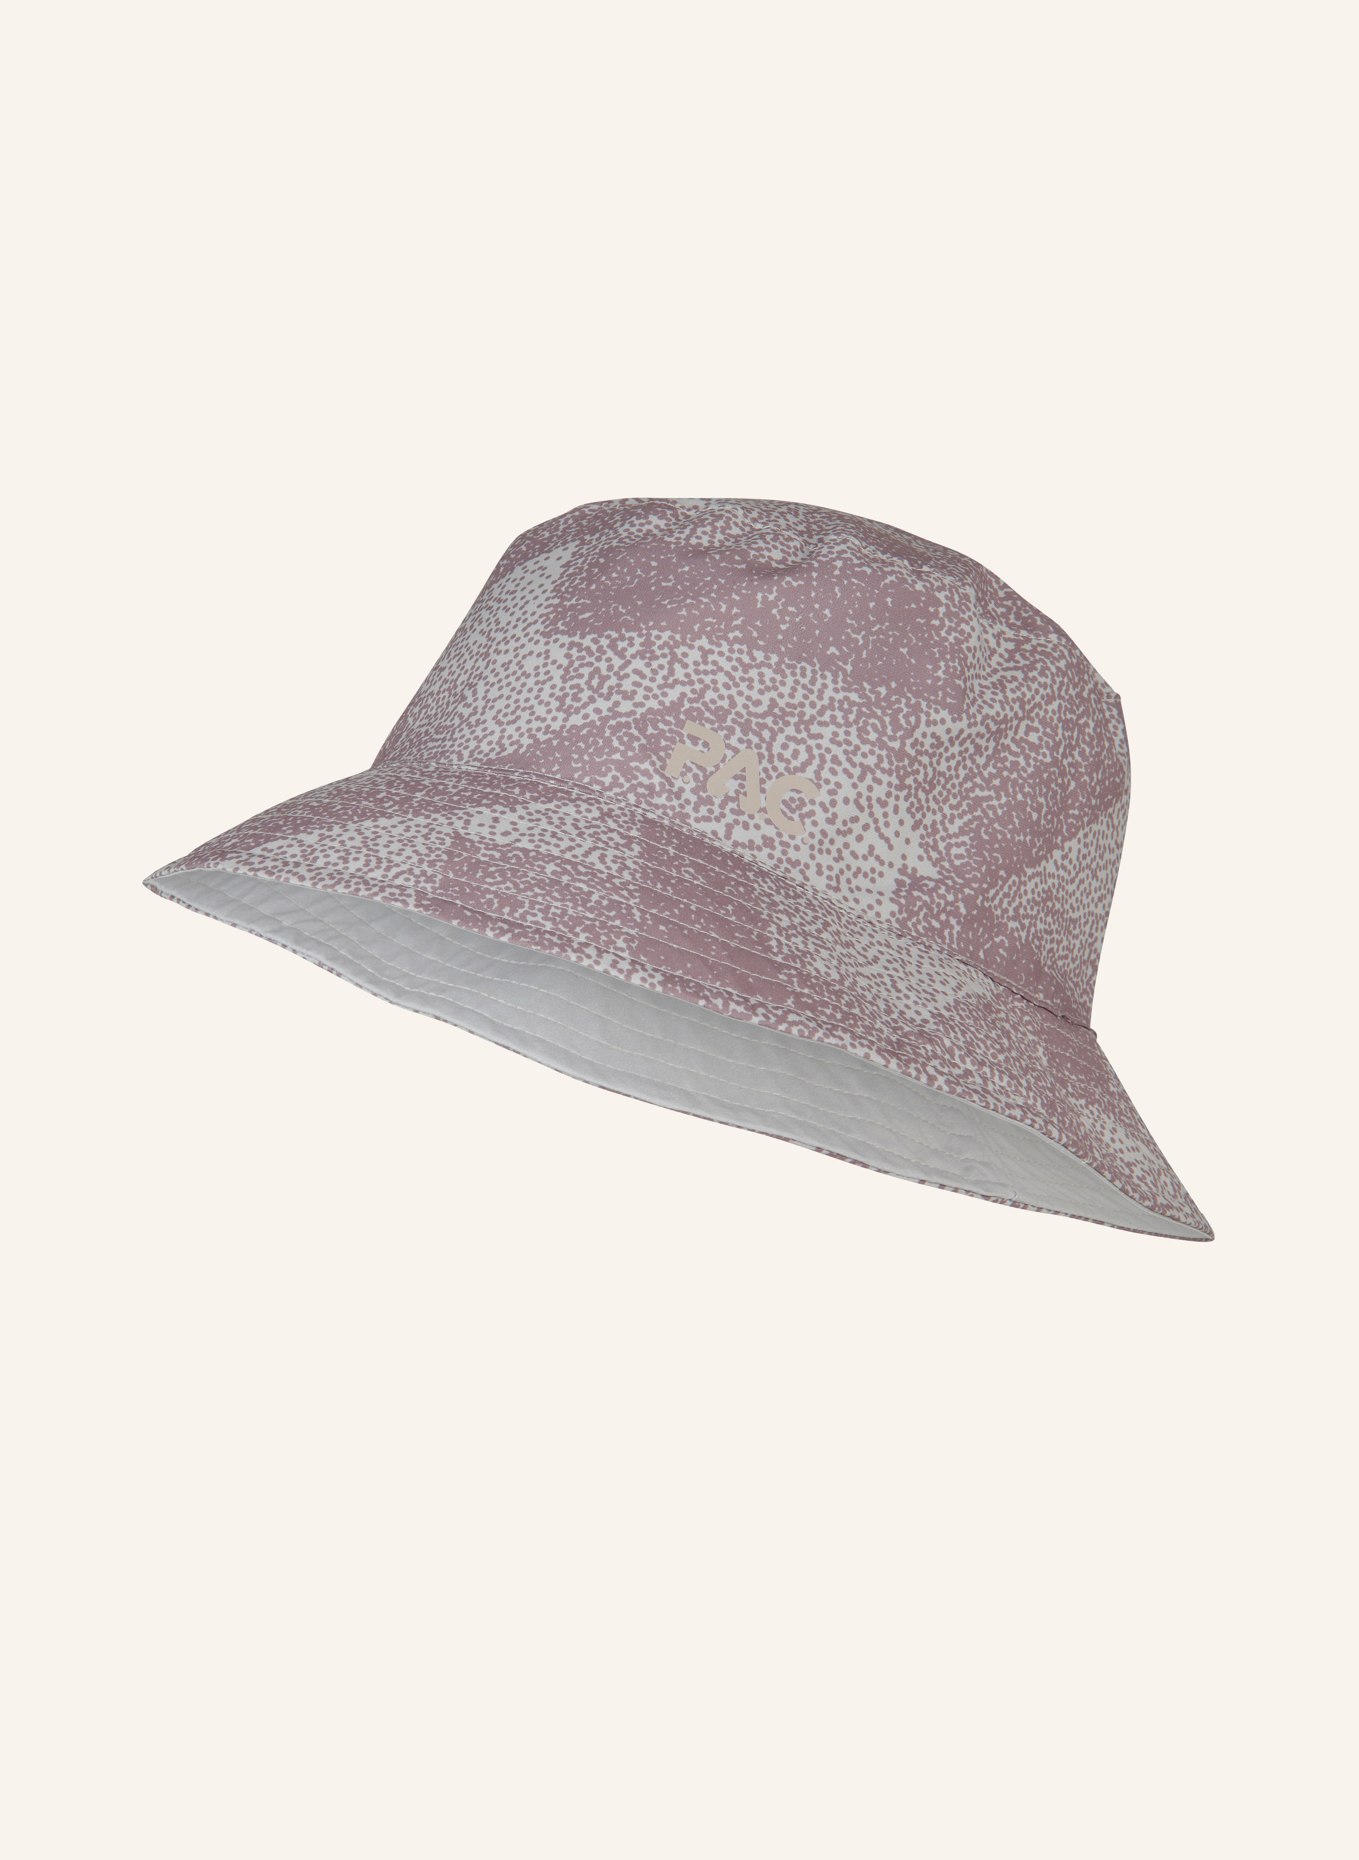 P.A.C. Reversible bucket hat LEDRAS, Color: LIGHT GRAY (Image 1)